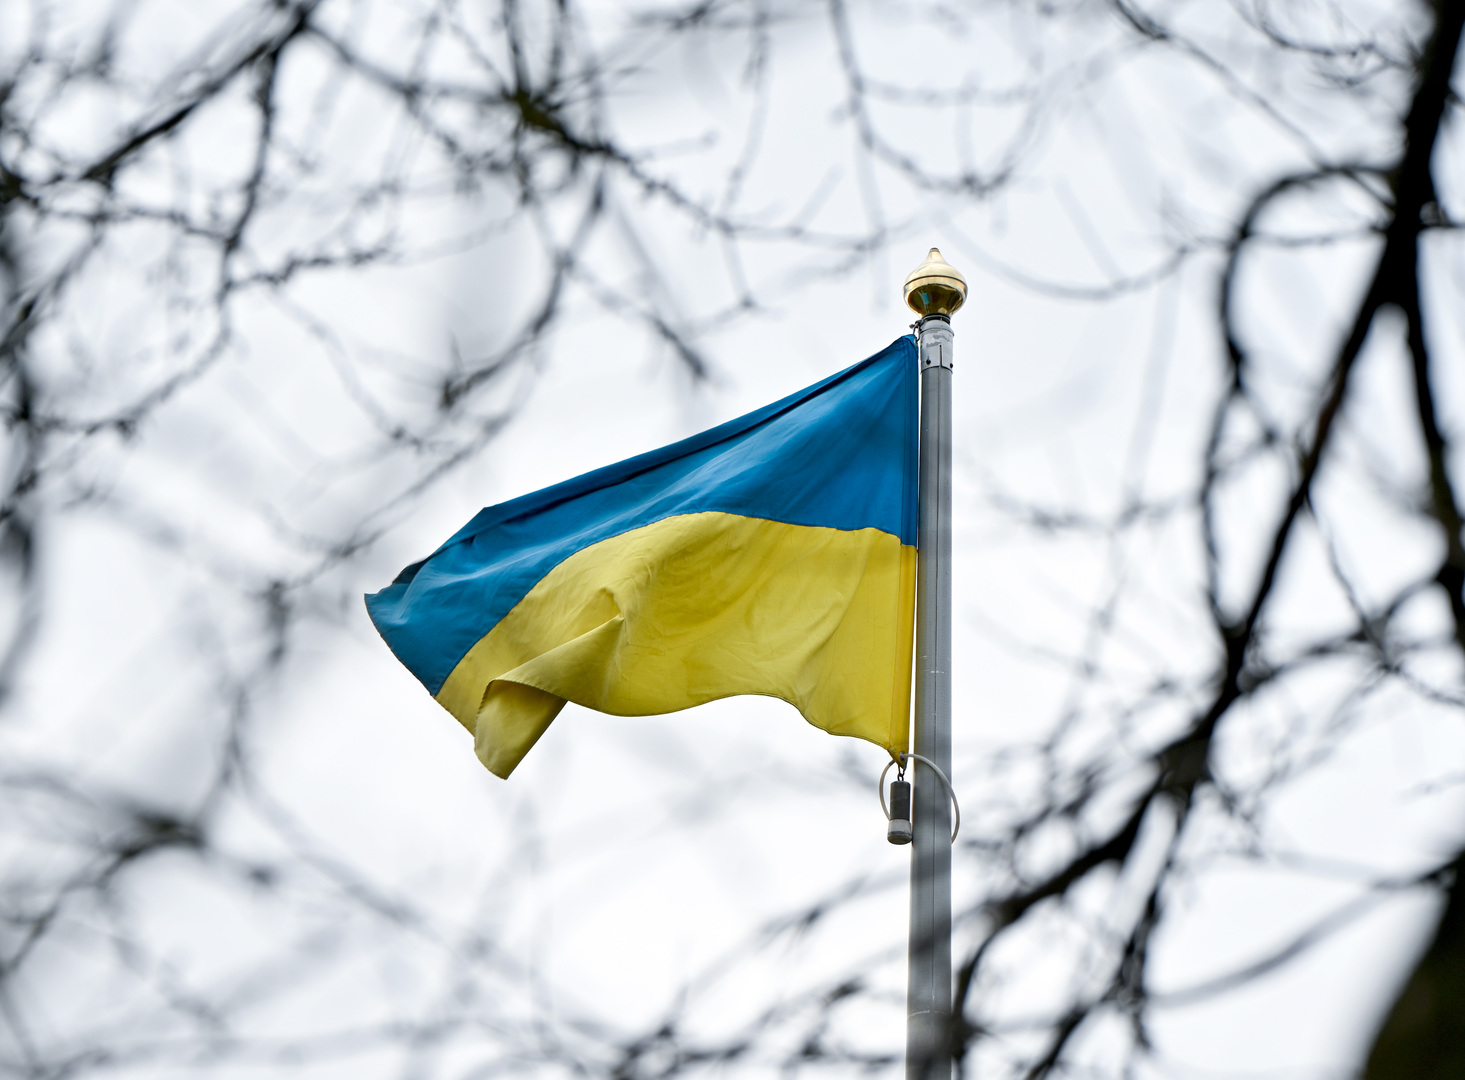 رويترز: أوكرانيا قد تلغي قائمتها لـ